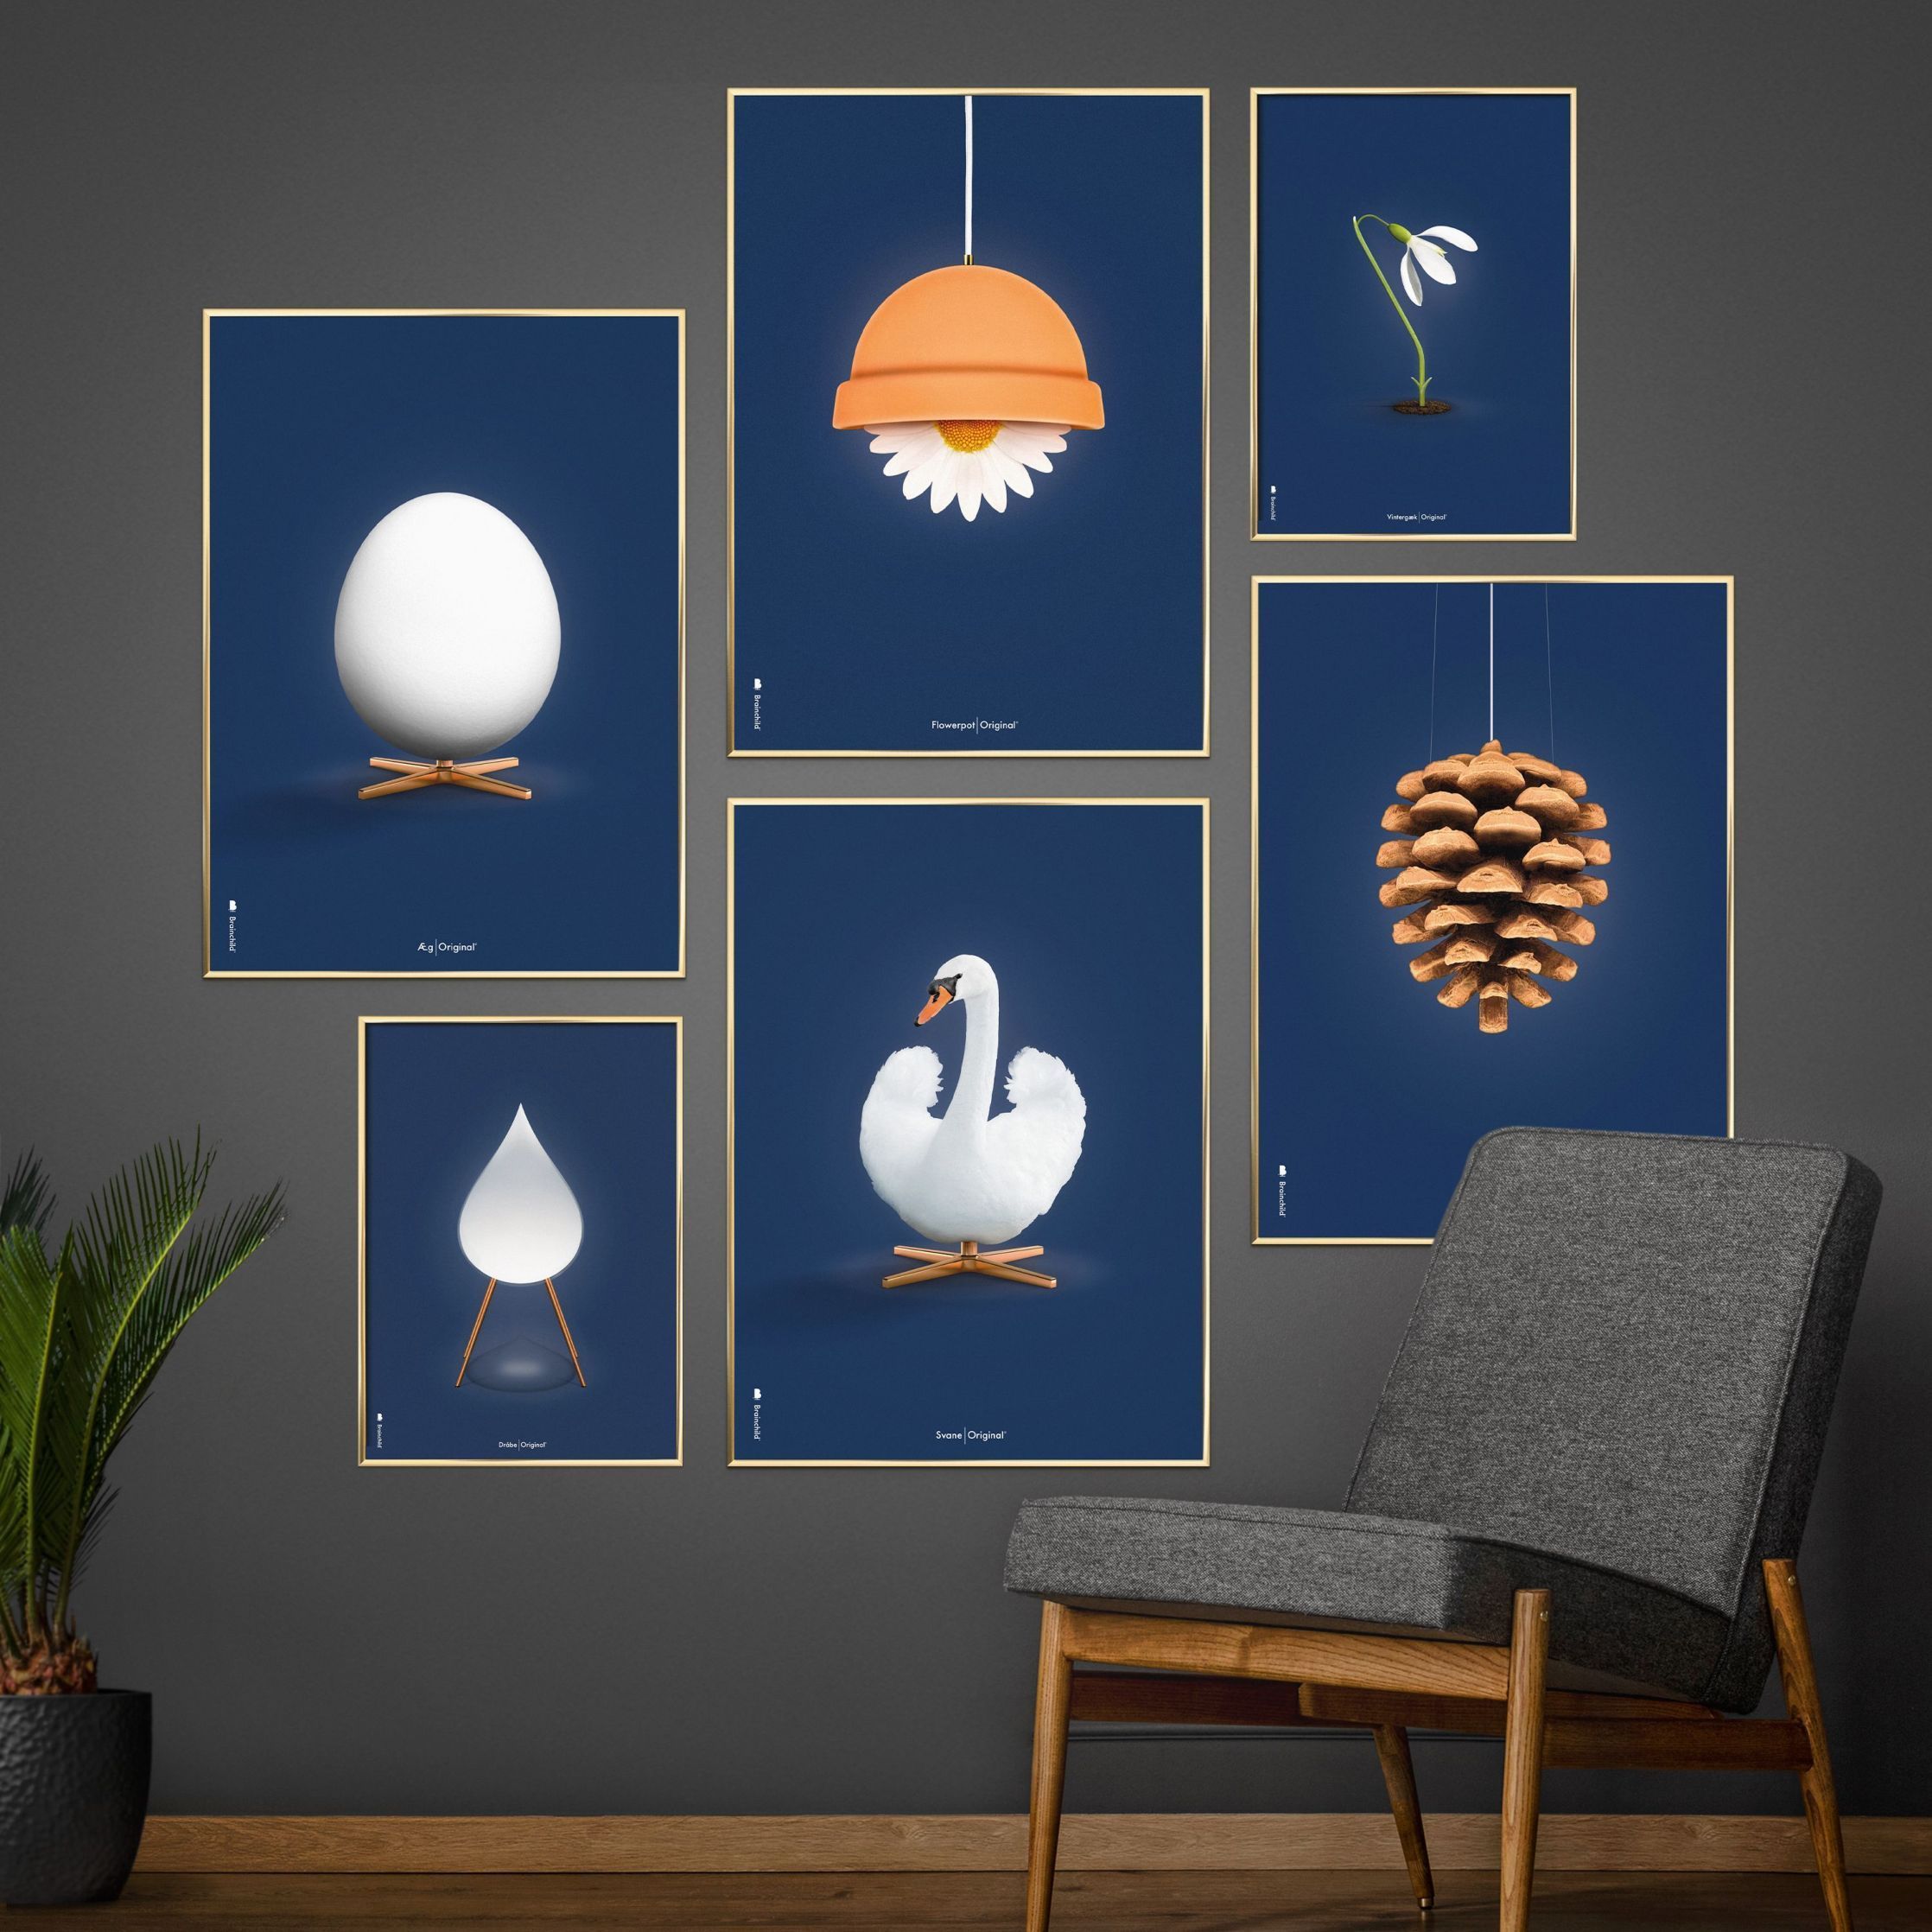 brainchild Swan Classic plakat, mørk træ ramme A5, mørkeblå baggrund